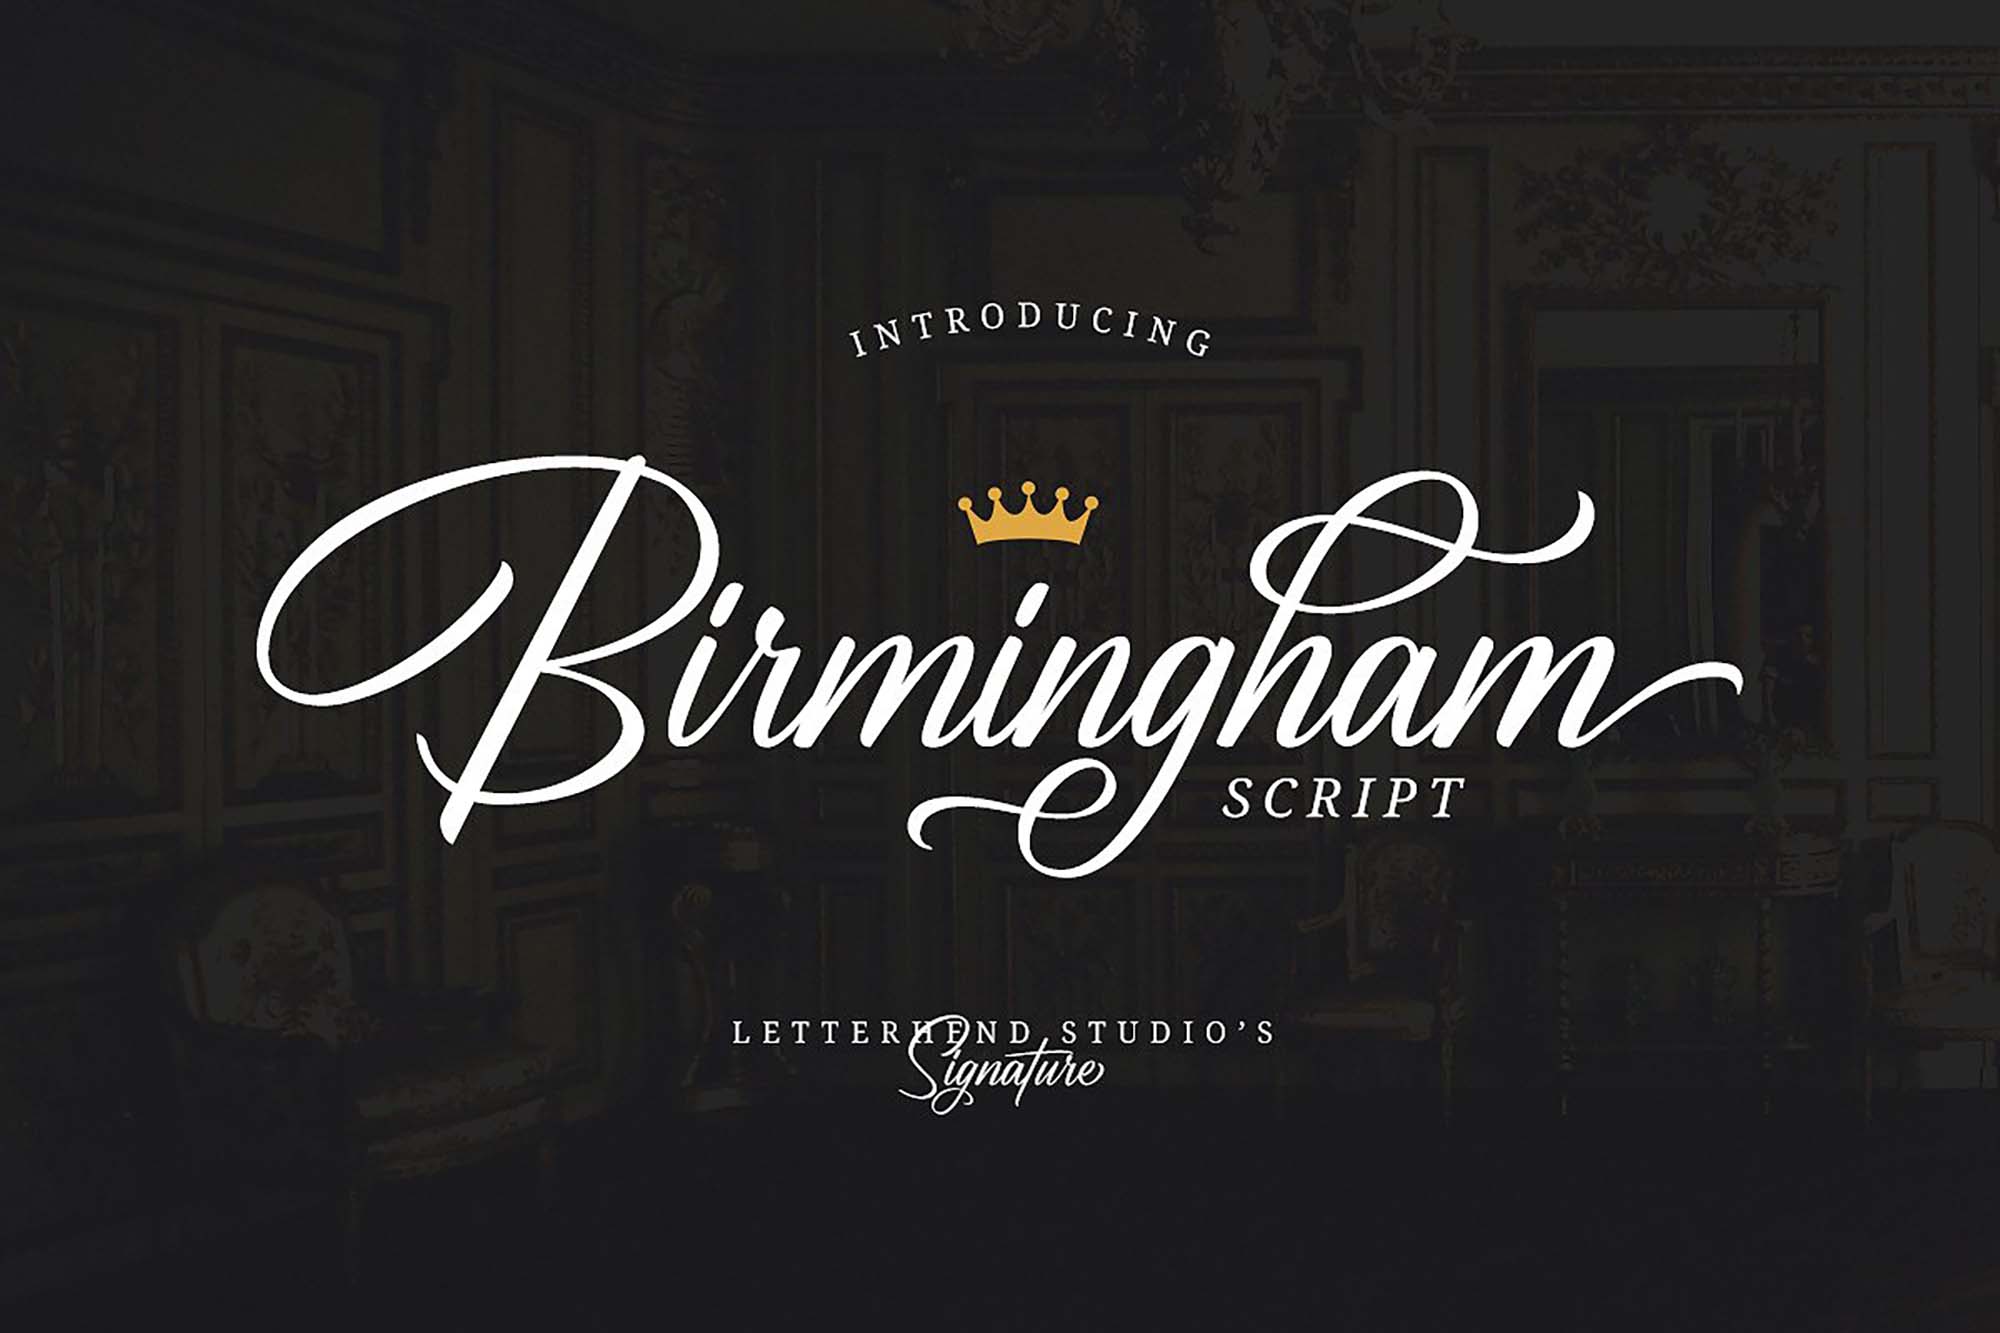 Birmingham Signature Font